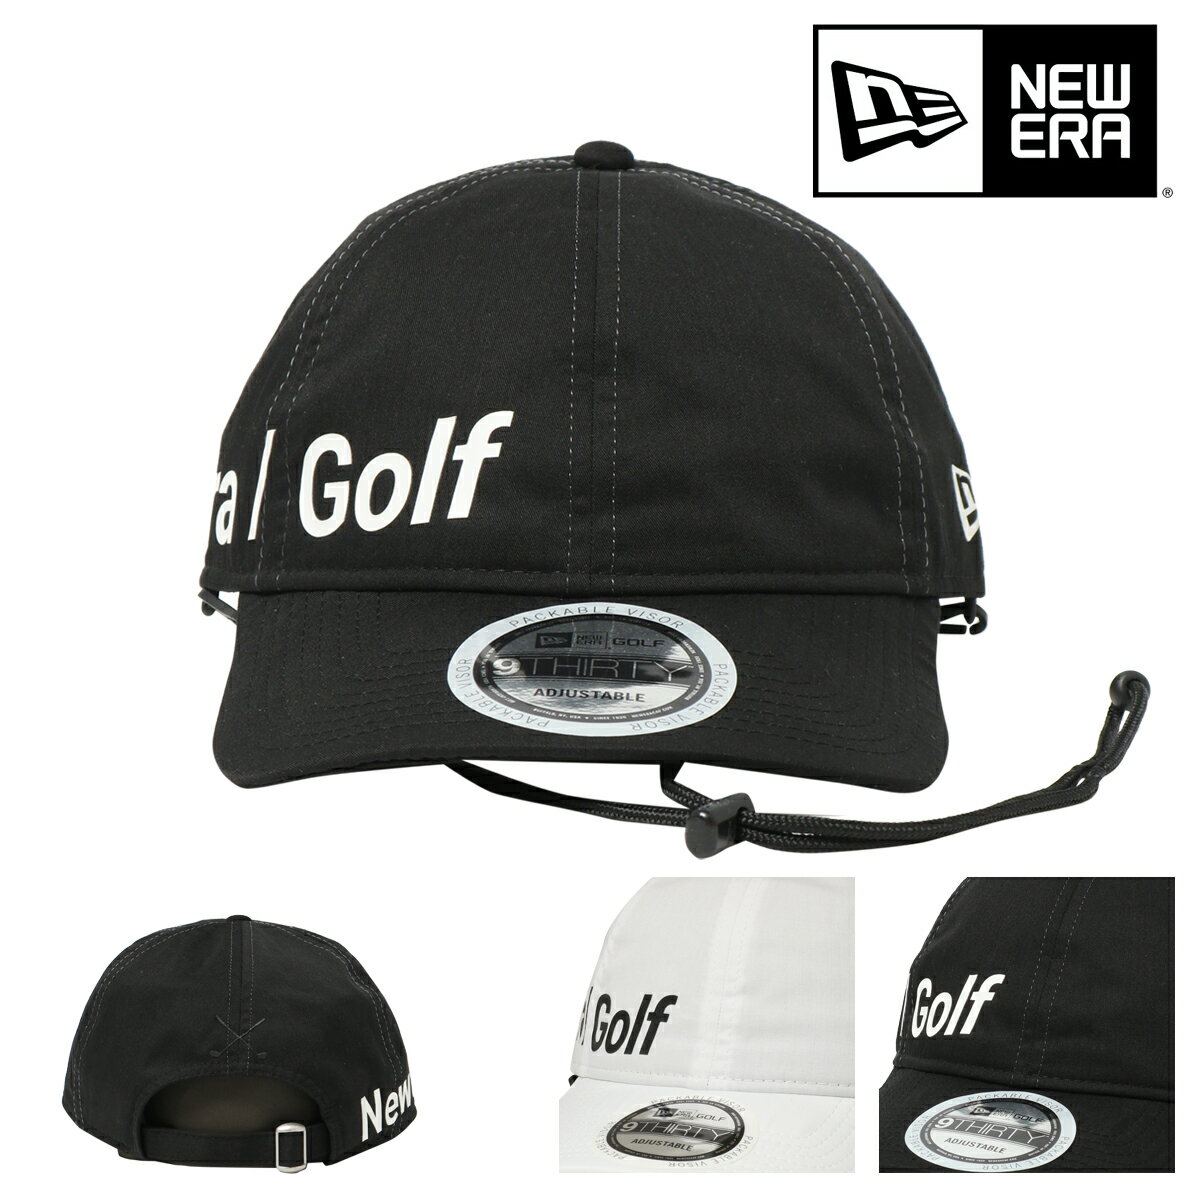 ニューエラ ゴルフ キャップ 帽子 GF 930 ECOPET メンズ レディース NEW ERA GOLF サスティナブル 抗菌 サイズ調整可